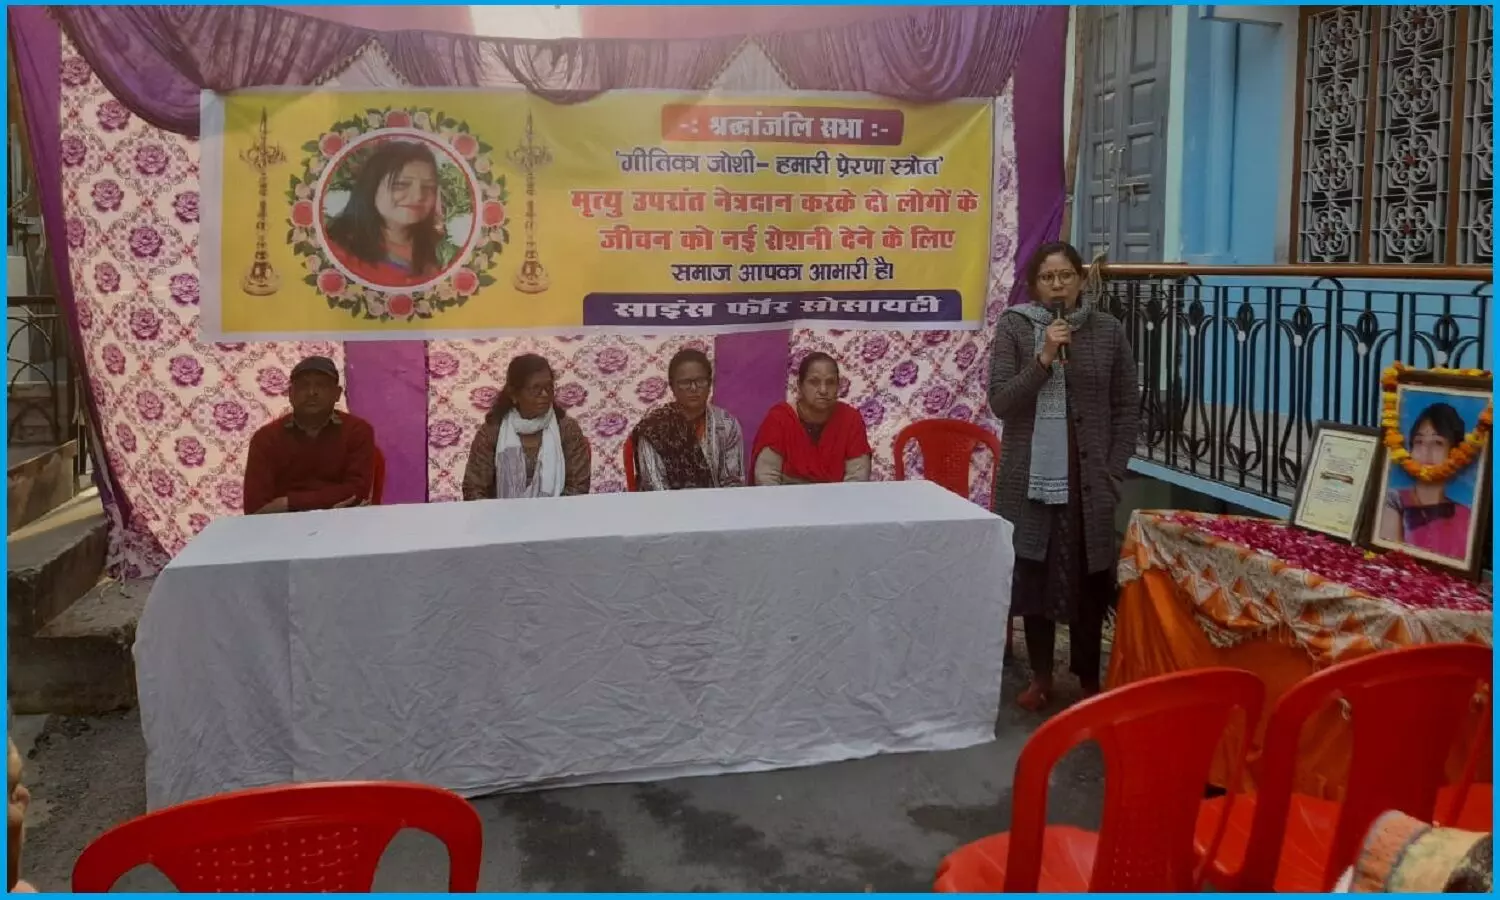 2 बच्चों की जिंदगी रौशन करने वाली गीतिका जोशी की श्रद्धांजलि सभा रामनगर में आयोजित, नन्हीं बेटियों ने मां की याद में सुनायीं दिल को छू लेने वाली कवितायें